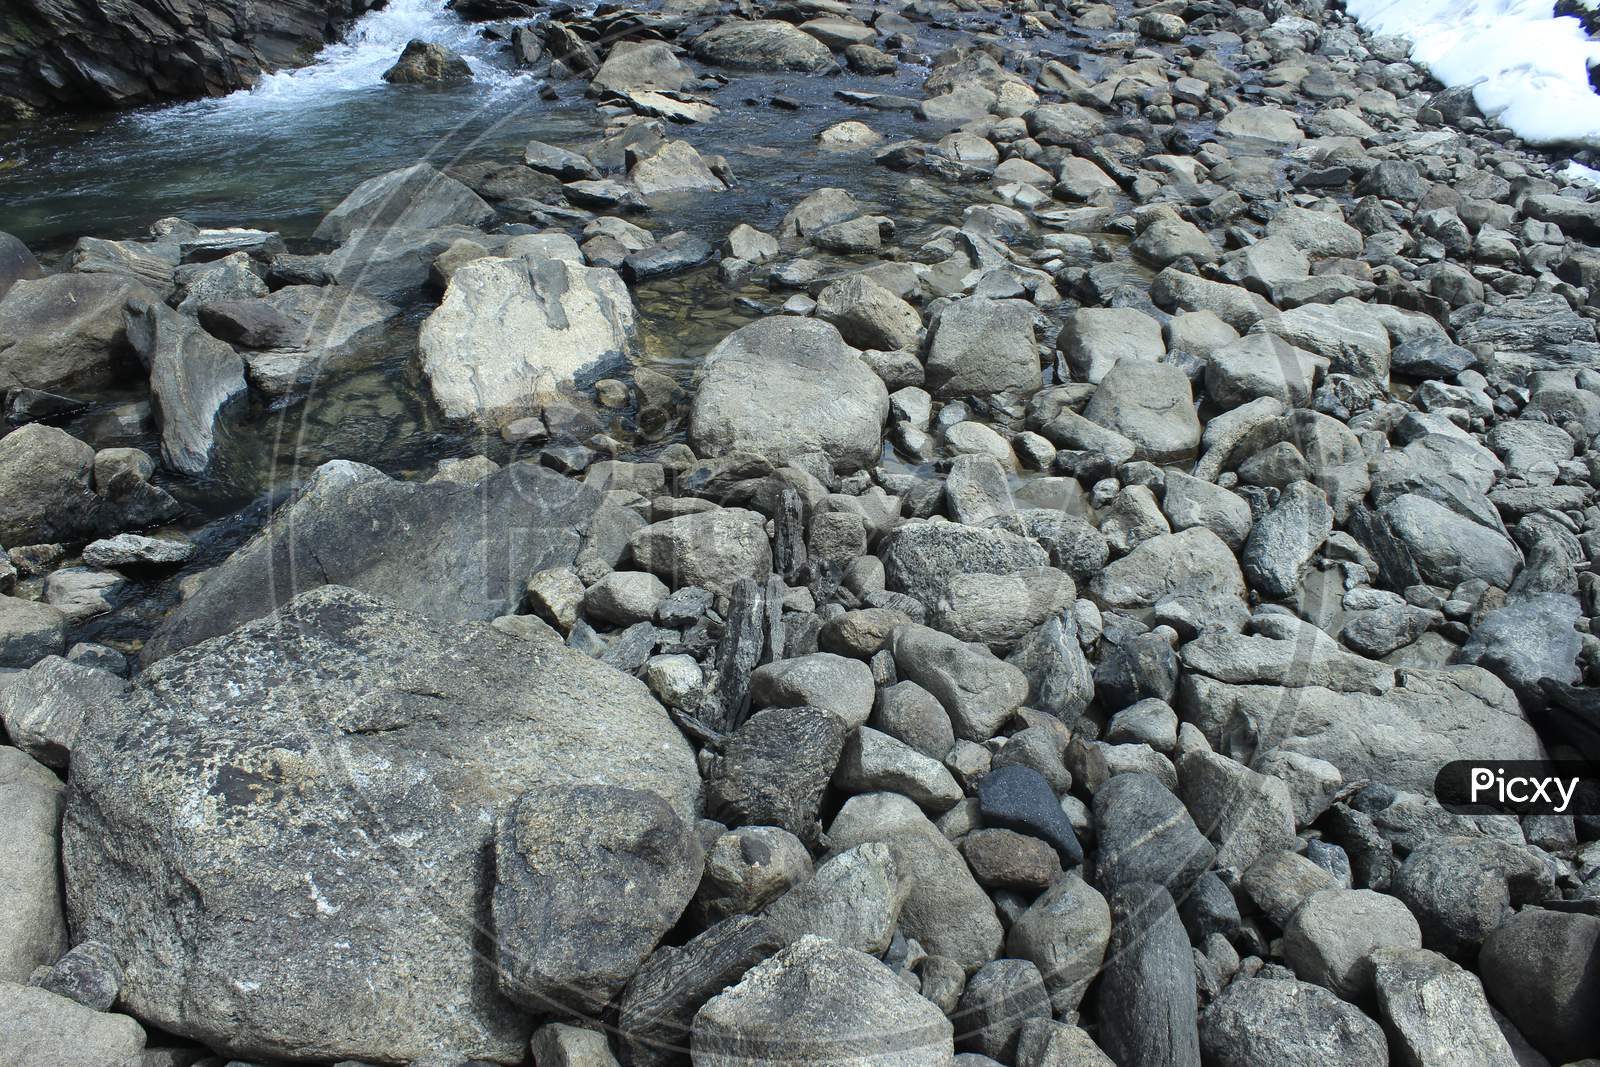 A Mini Waterflow through stones